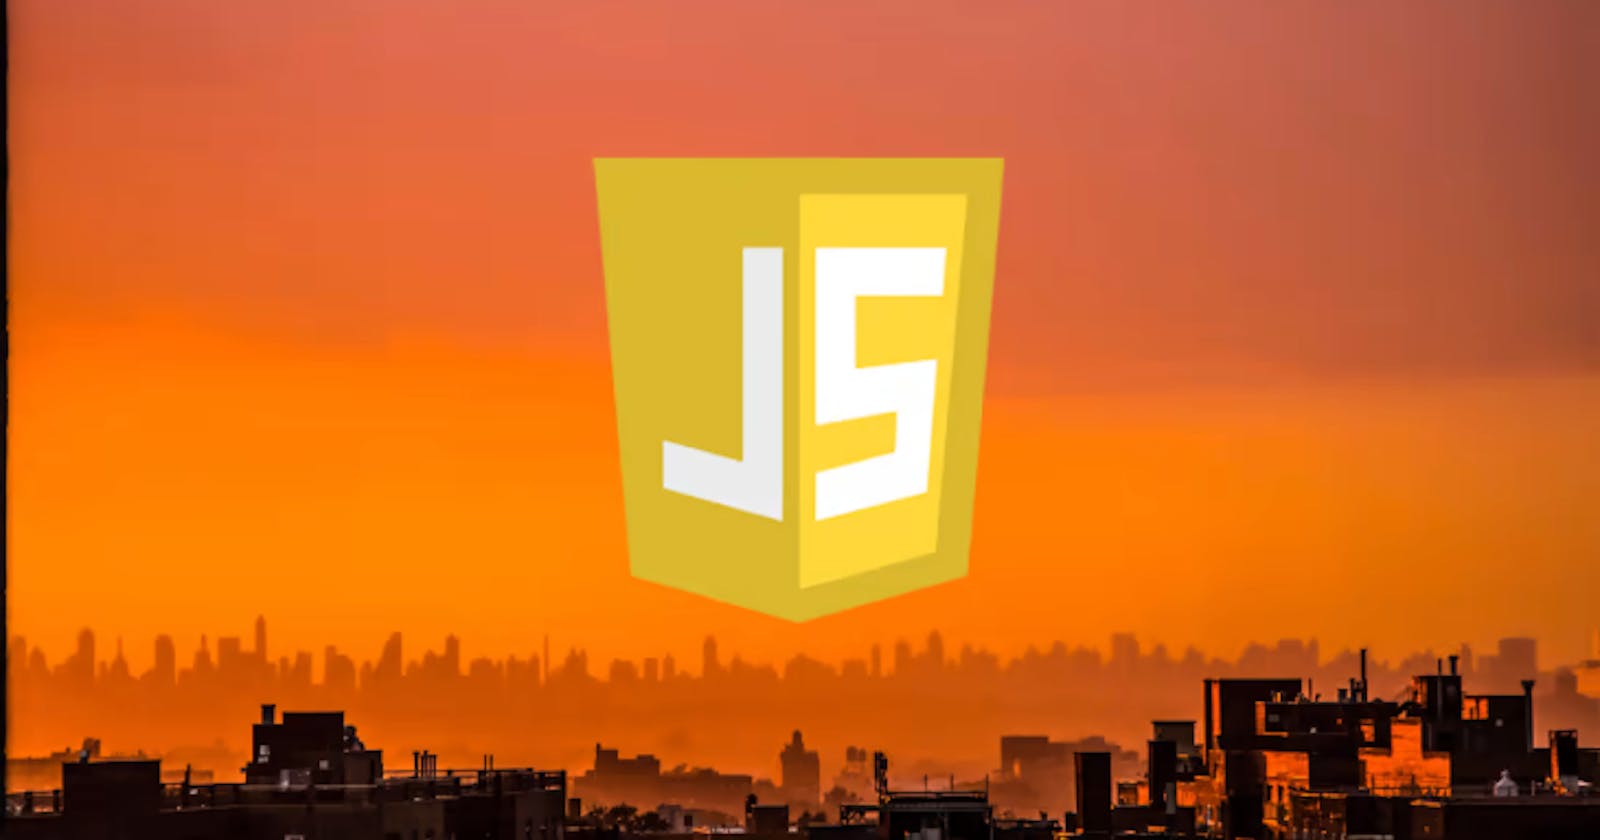 Closures in JavaScript